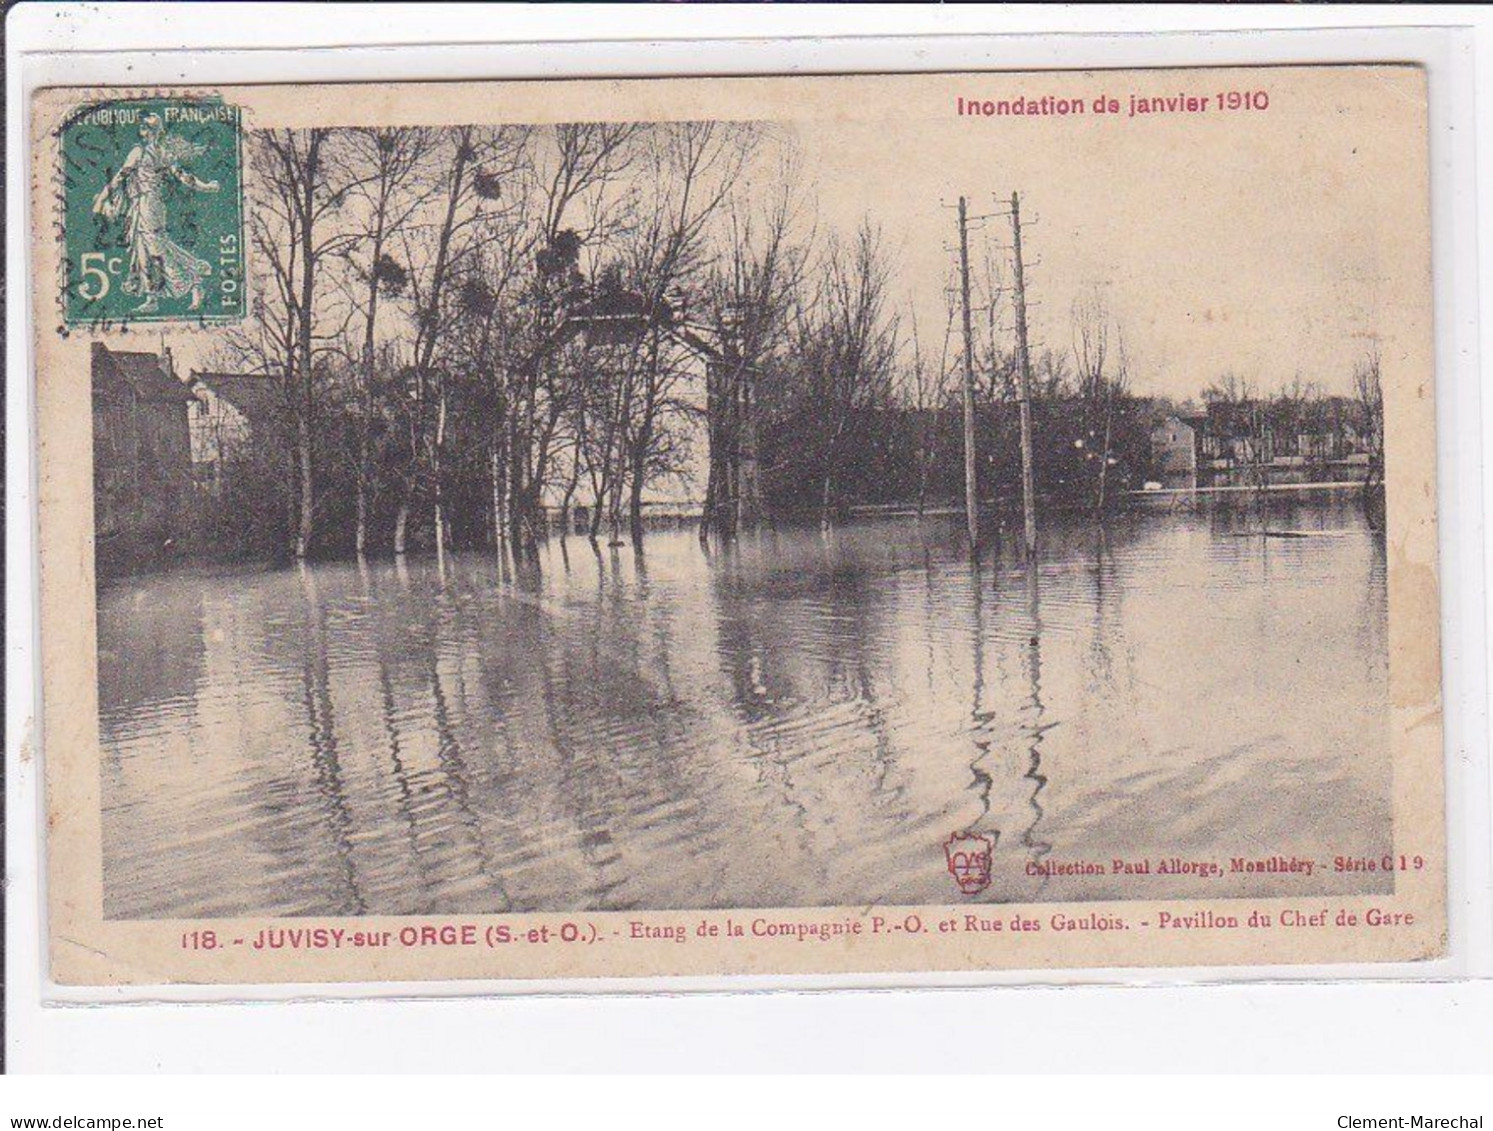 JUVISY Sur ORGE : Inondation 1910 - Entrée De La Compagnie P.O. Et Rue Des Gaulois - Pavillon Du Chef De Gare - état - Juvisy-sur-Orge